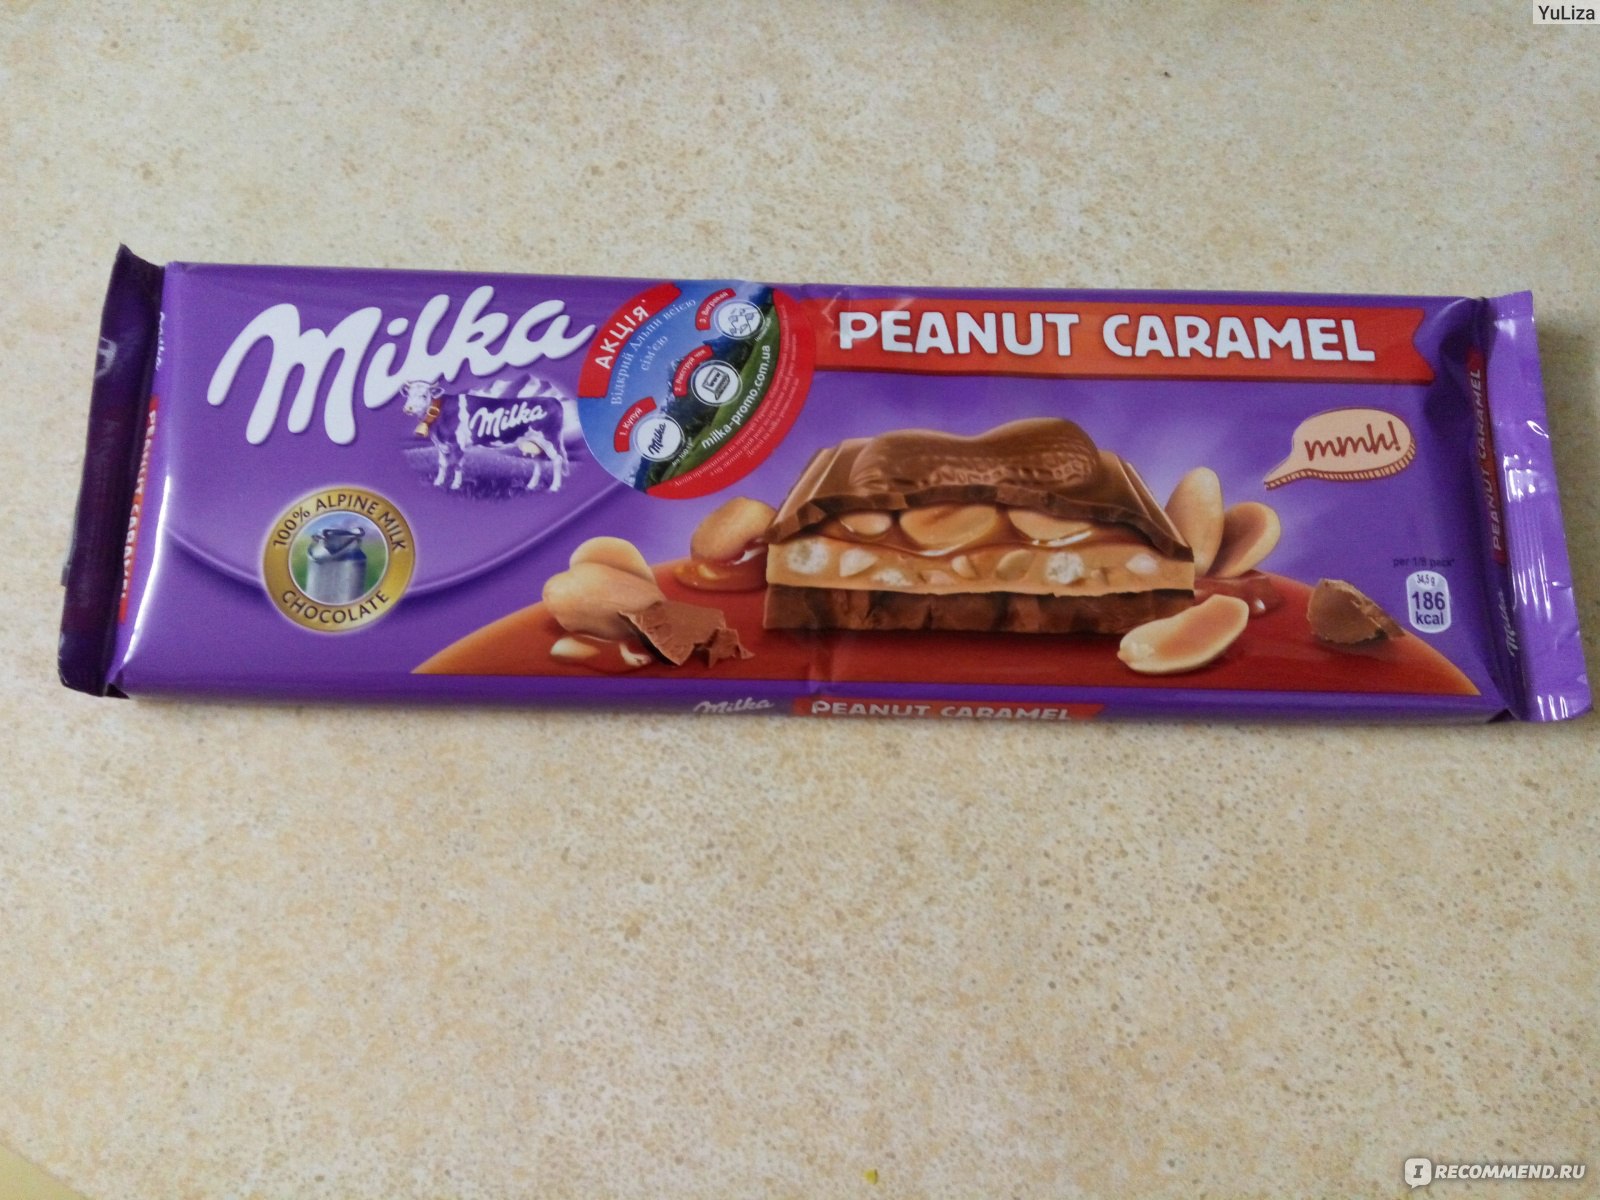 Шоколад Milka большая с арахисом